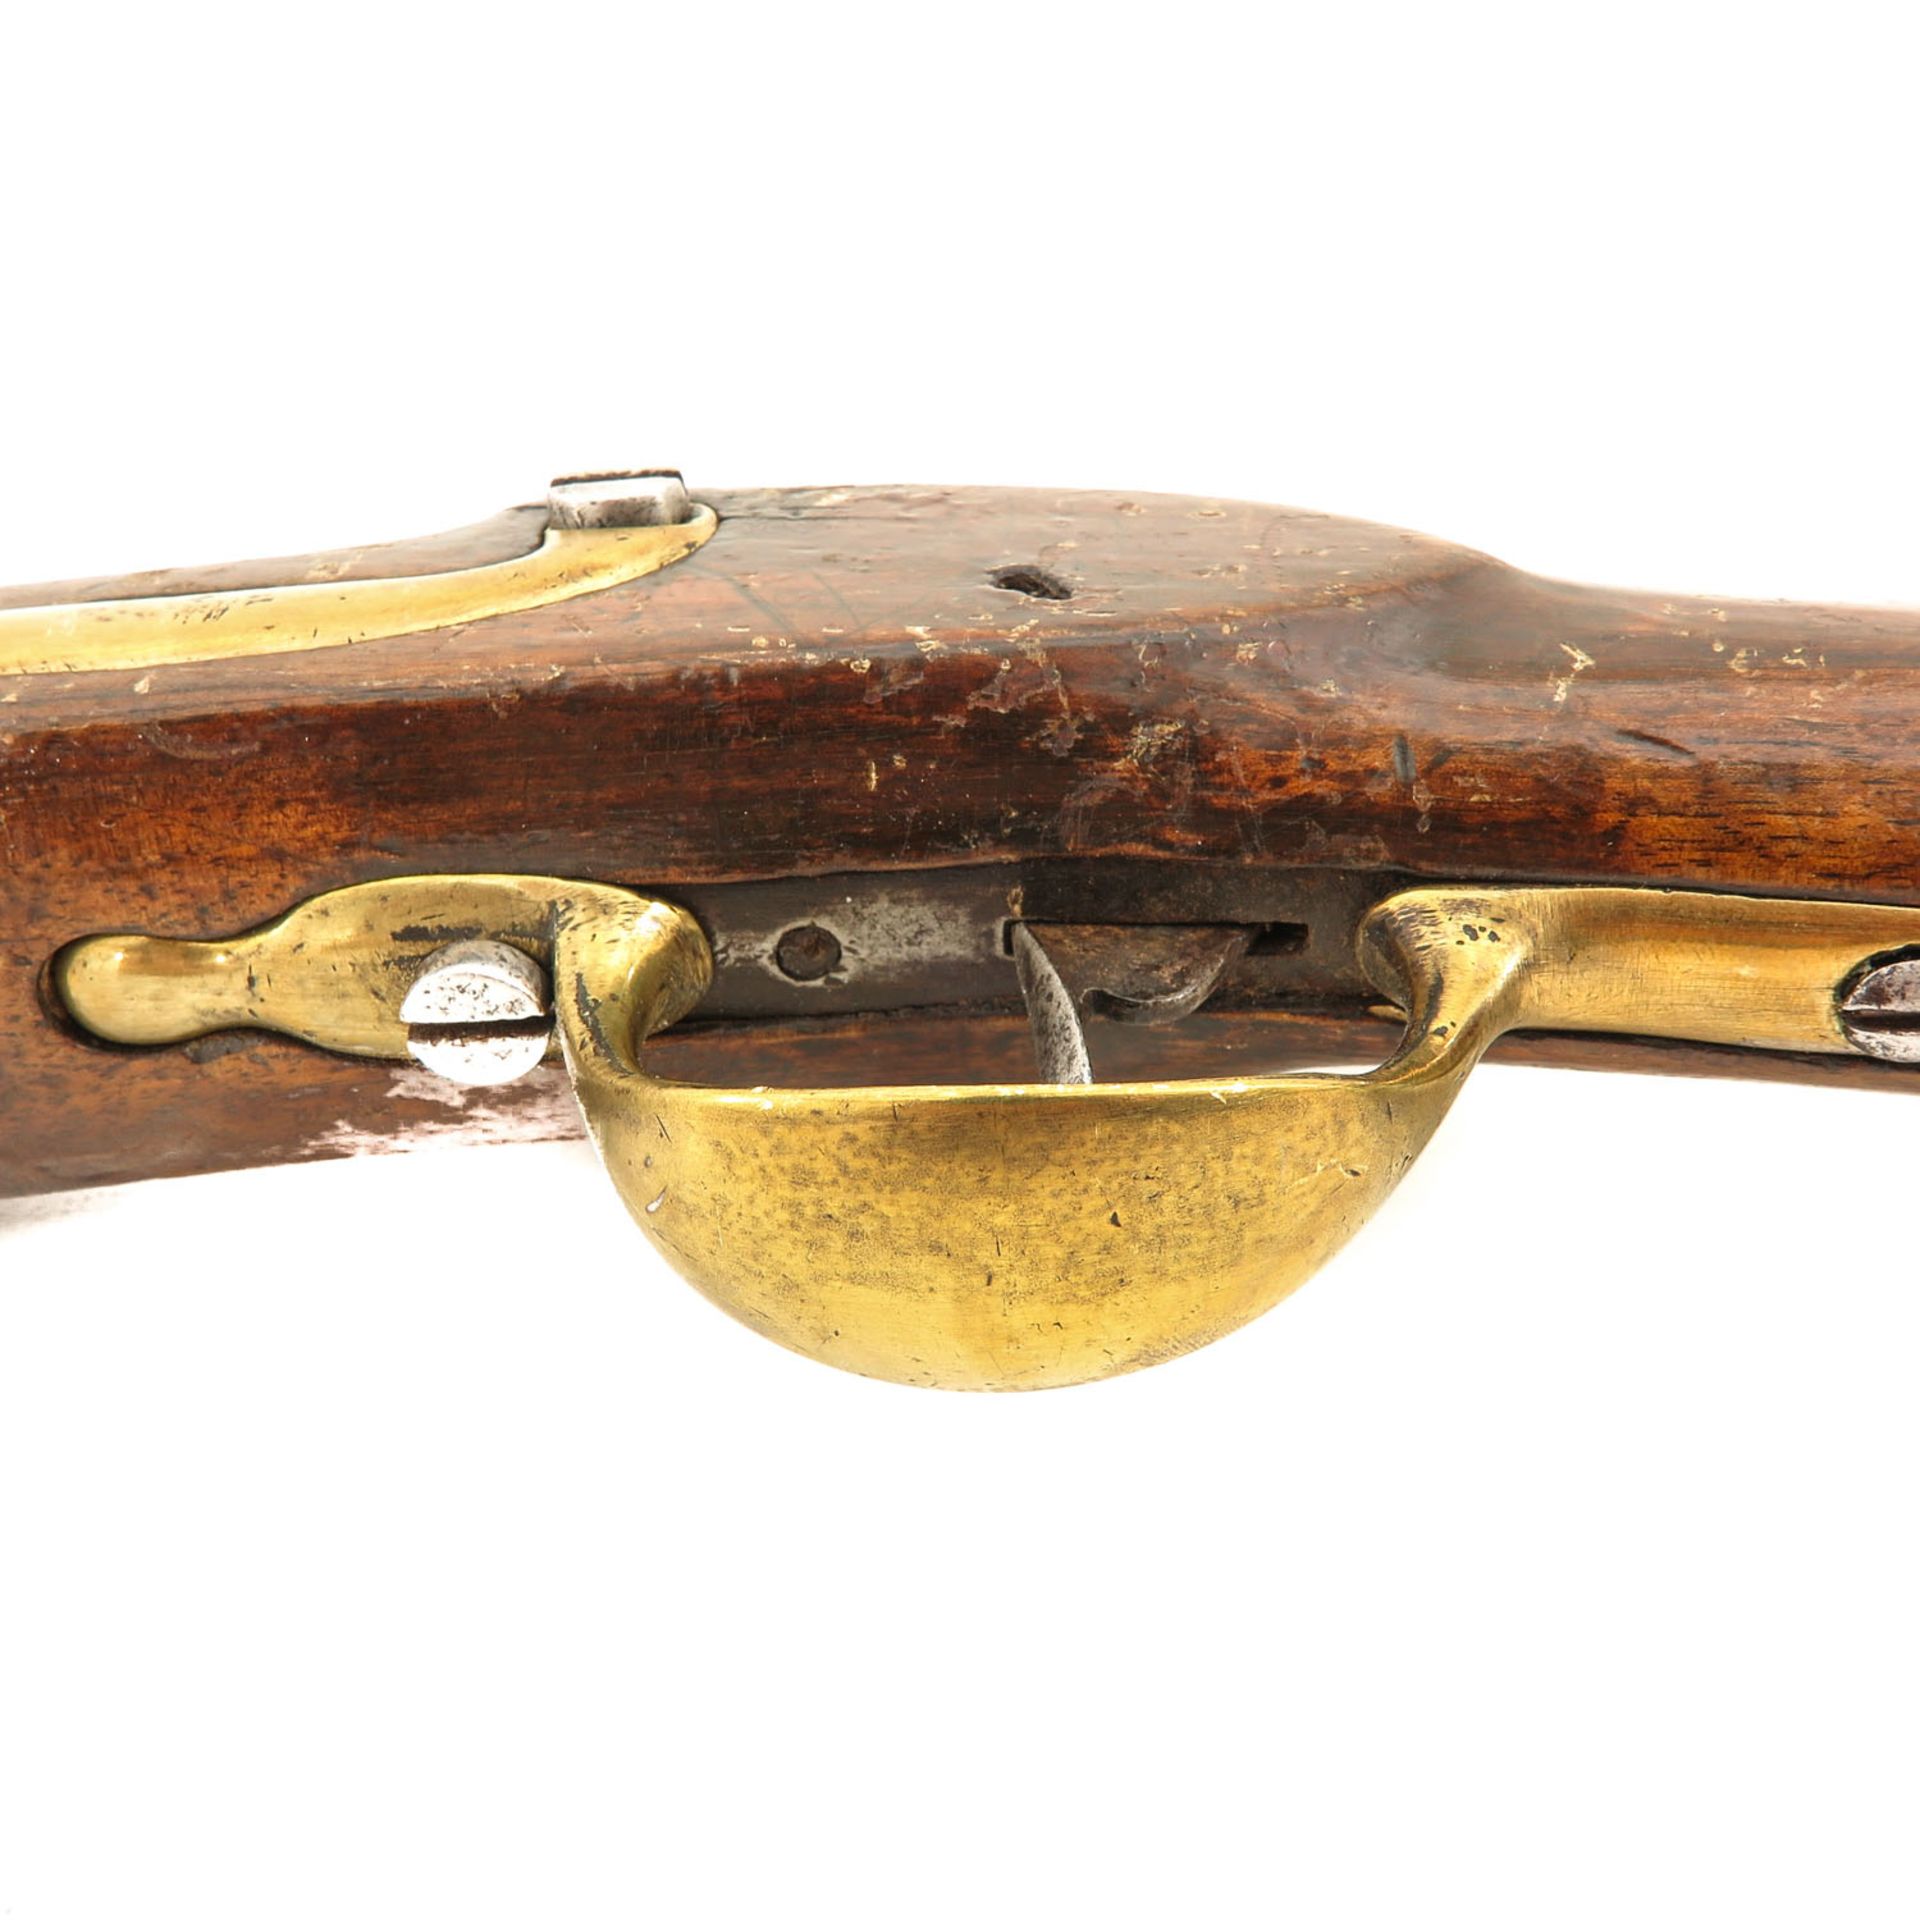 An Antique Belgium Carbine - Image 5 of 8